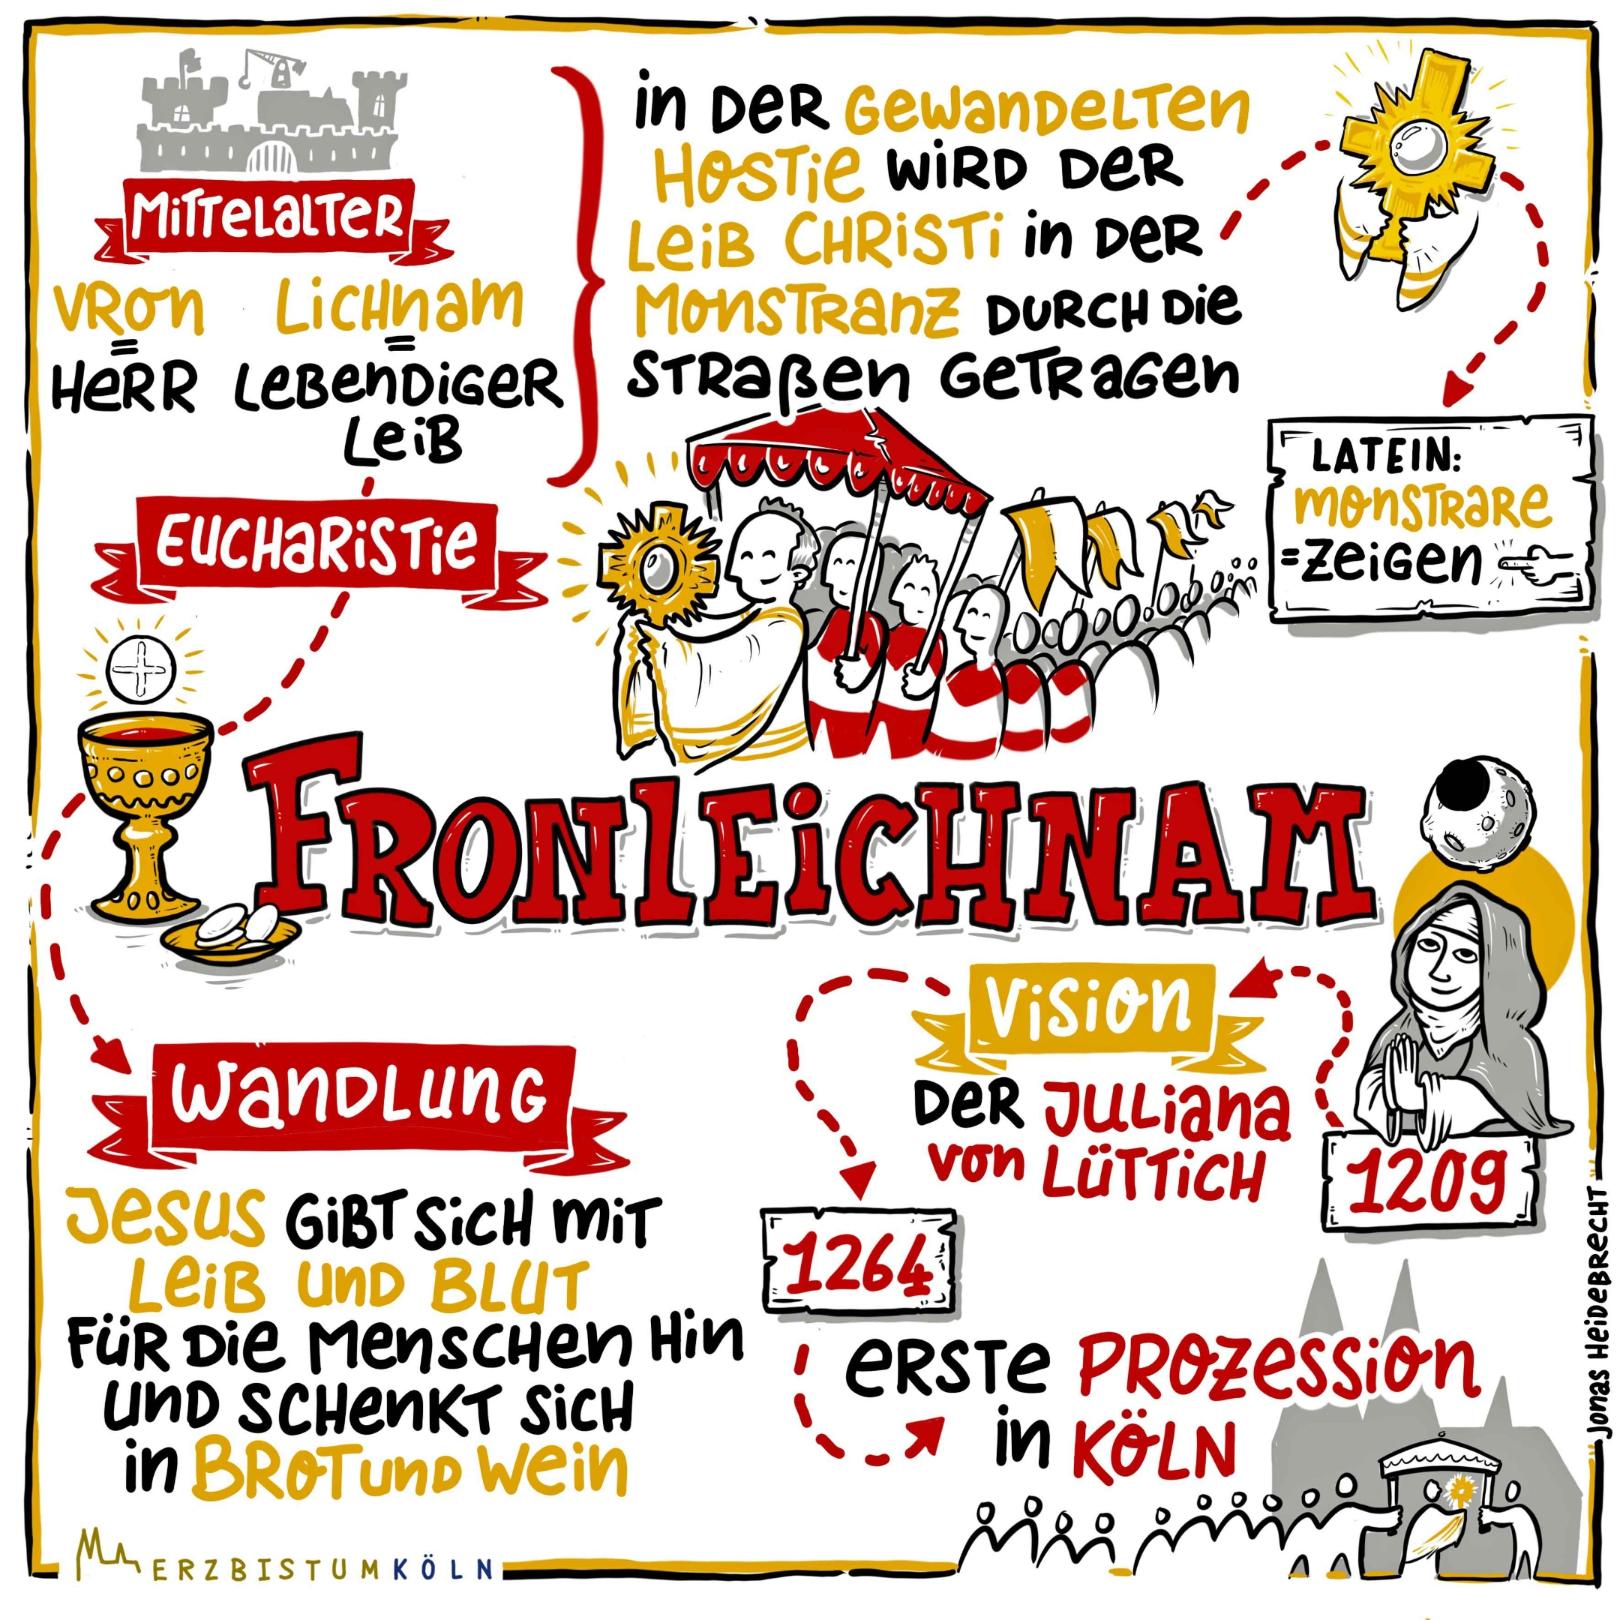 Fronleichnam - schnell erklärt (c) Heidebrecht Frei (Erzbistum Köln) - www.pfarrbriefservice.de